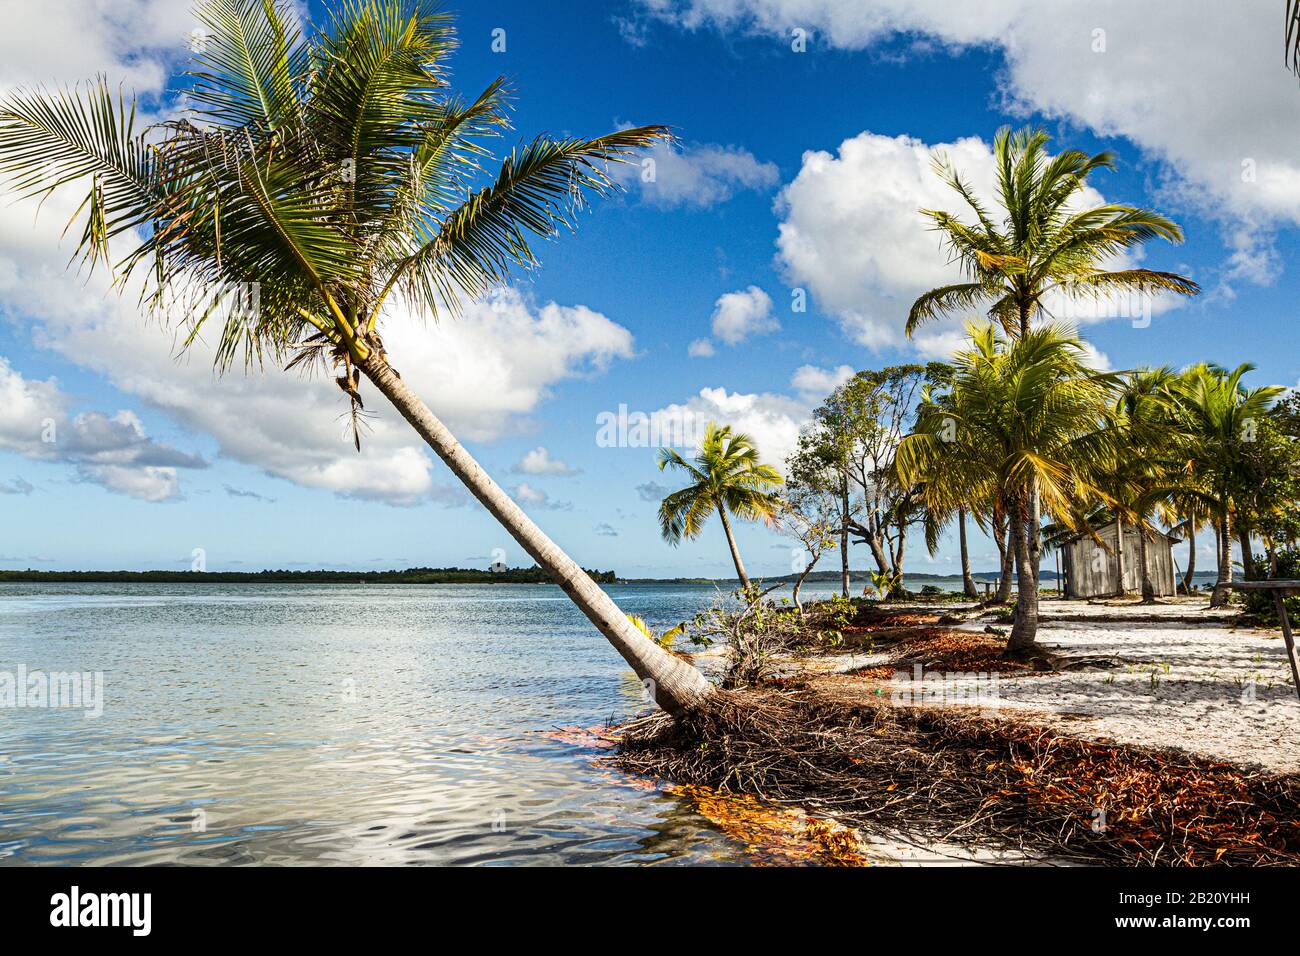 Palmeras de coco en una playa tropical en la Isla Goio, en la Bahía Camamu. Marau, Bahía, Brasil. Foto de stock